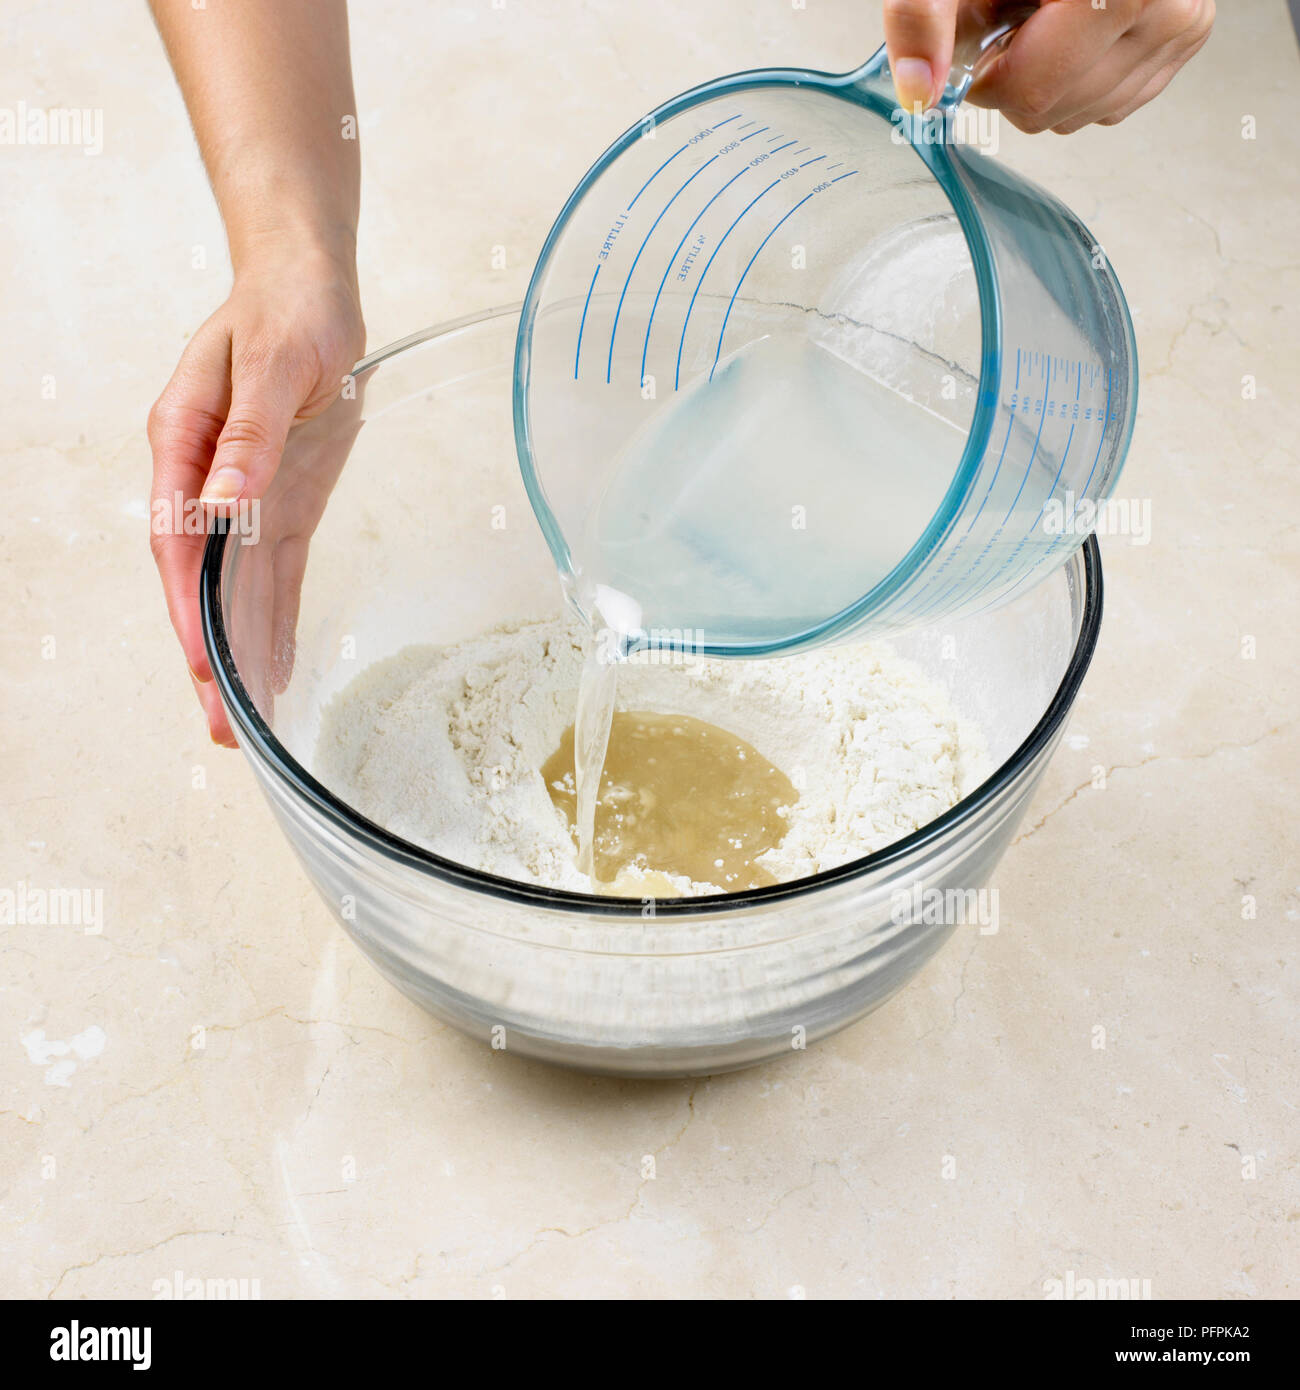 Hacer pasteles de corteza de agua caliente, verter la mezcla de grasa derretida caliente en el pozo en el centro de la mezcla de harina Foto de stock